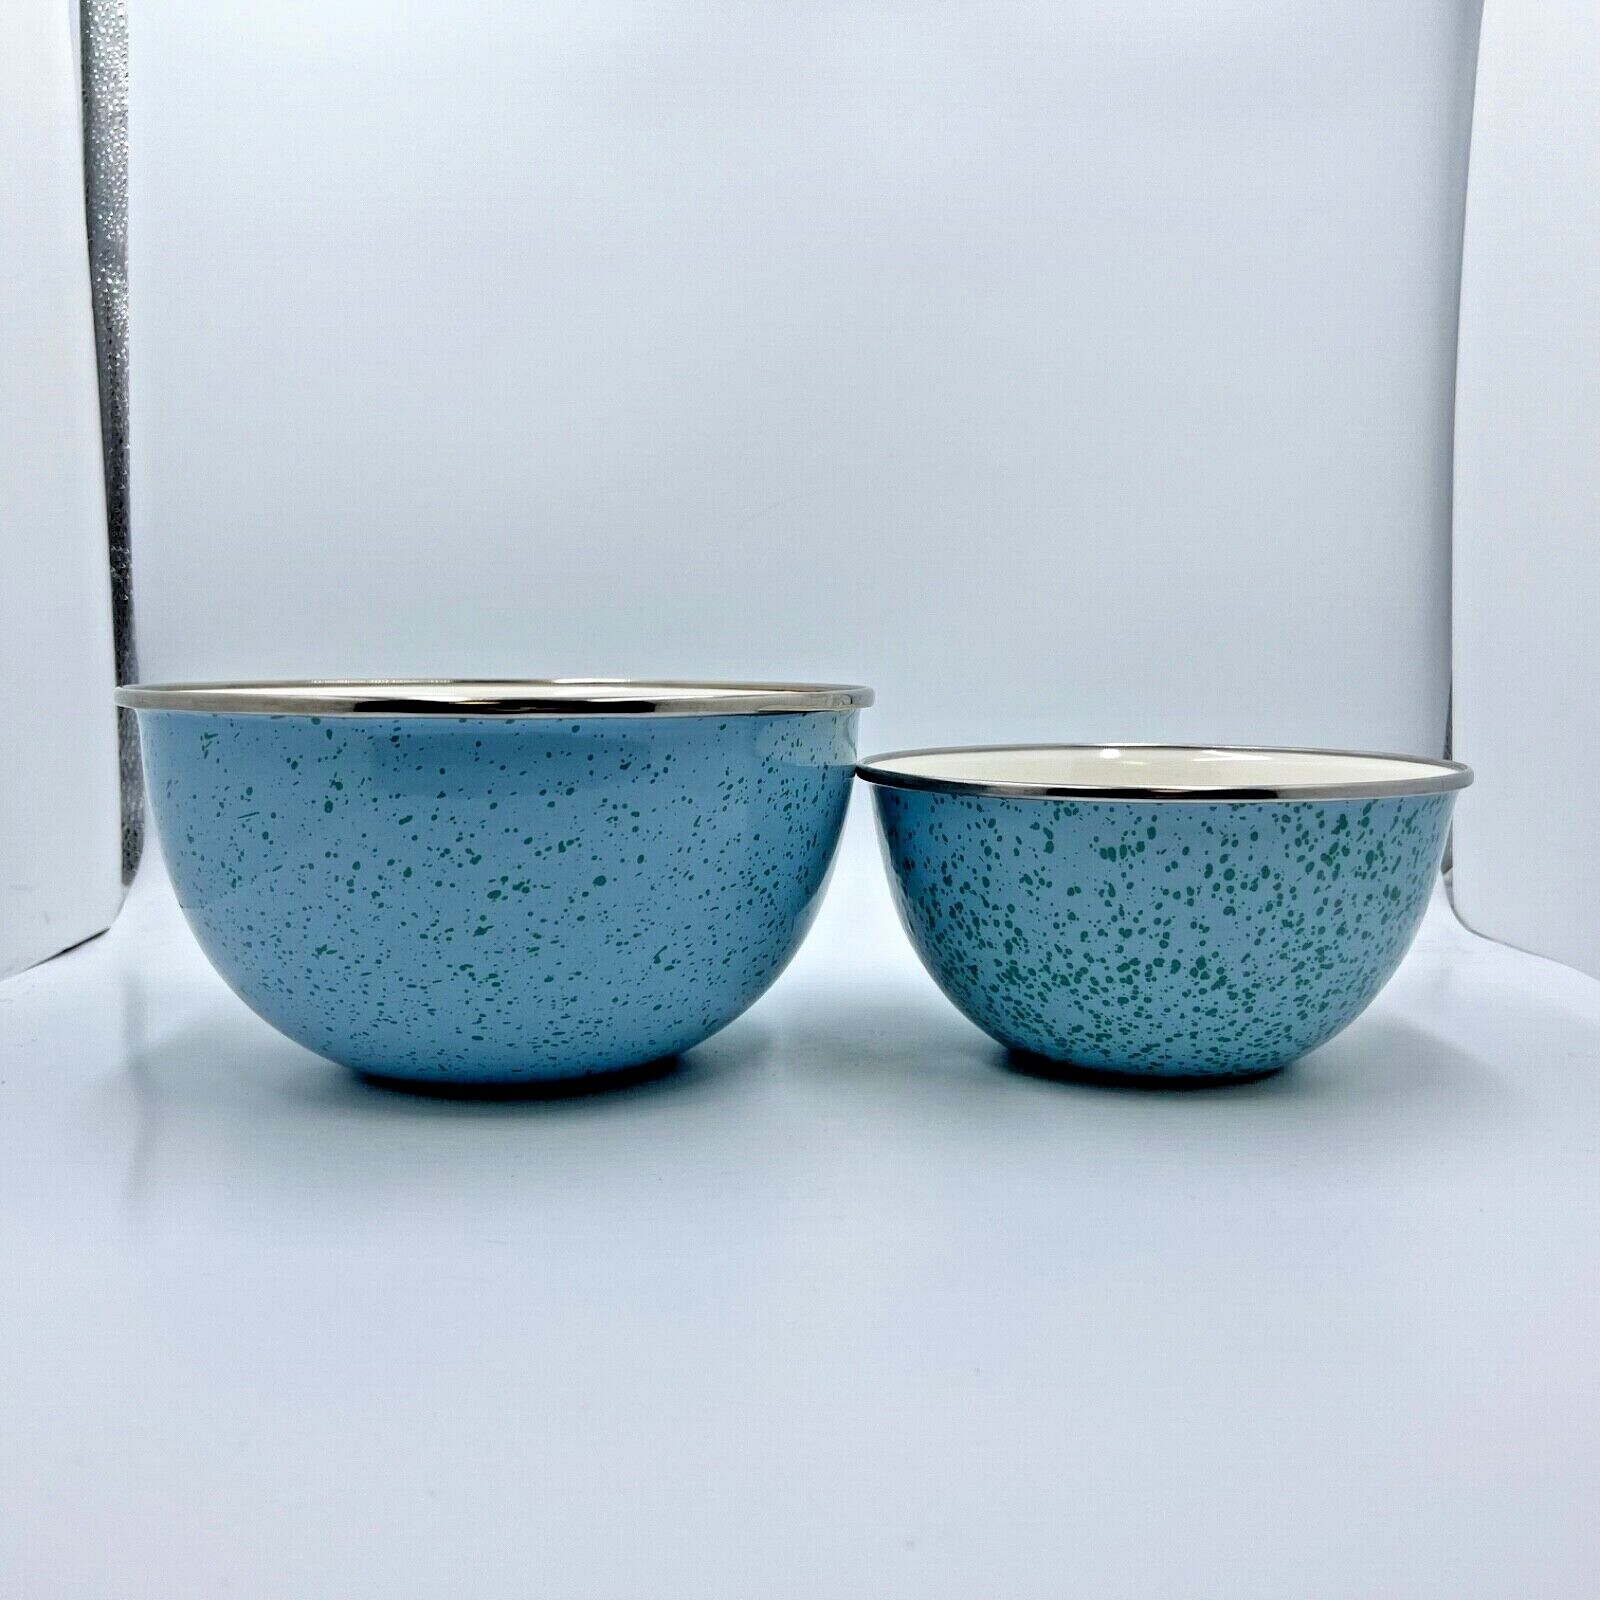 Paula Deen Enamel Mixing Bowl Set of 2 Aqua Blue Speckle Pattern 1.5 3 quart